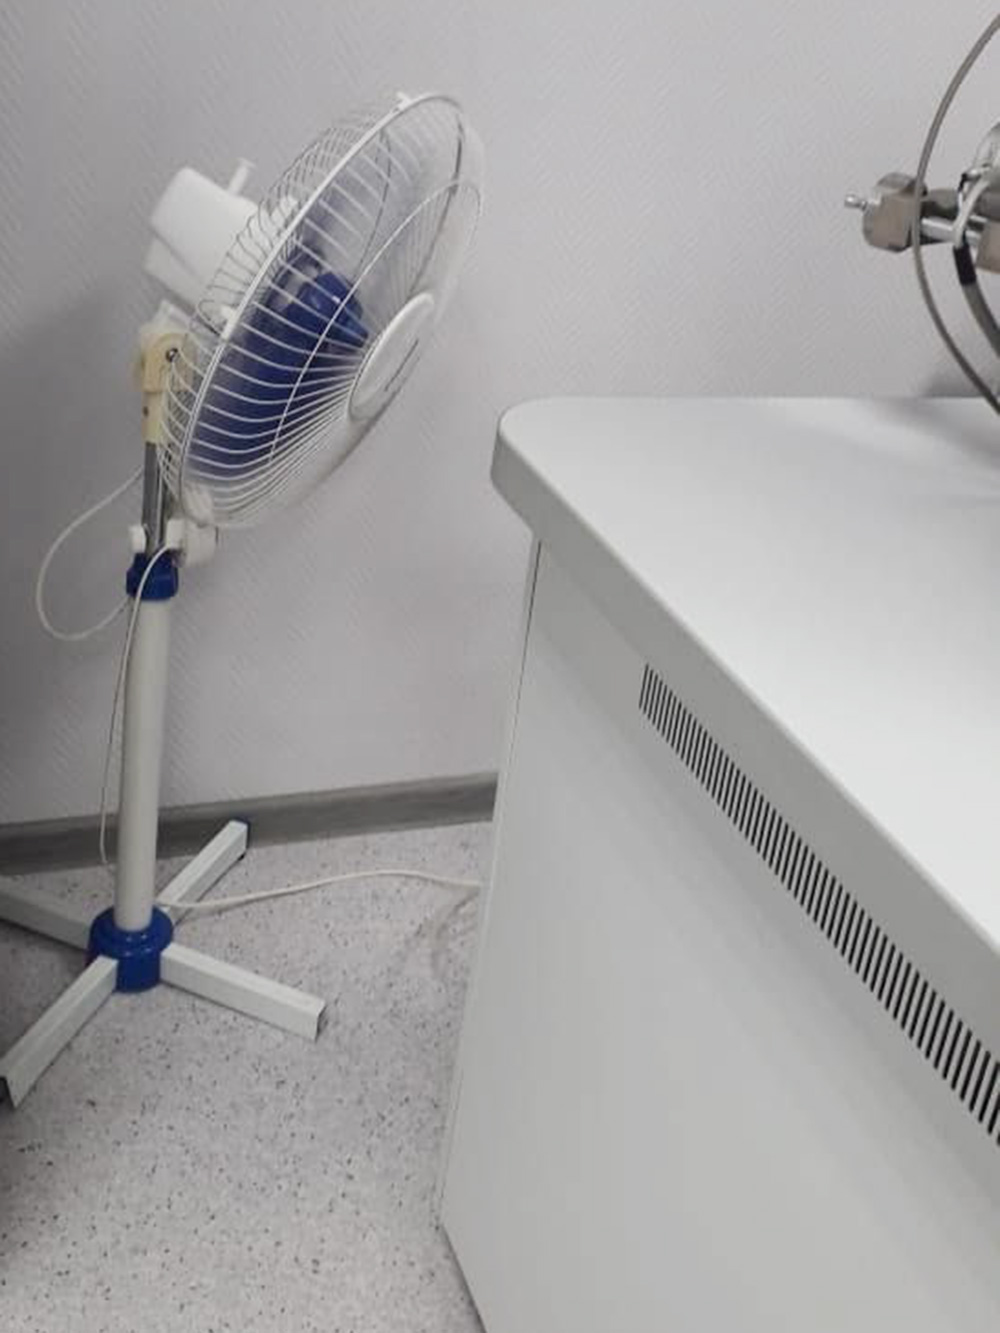 Вентилятор дует ровно на систему вентиляции и охлаждения прибора